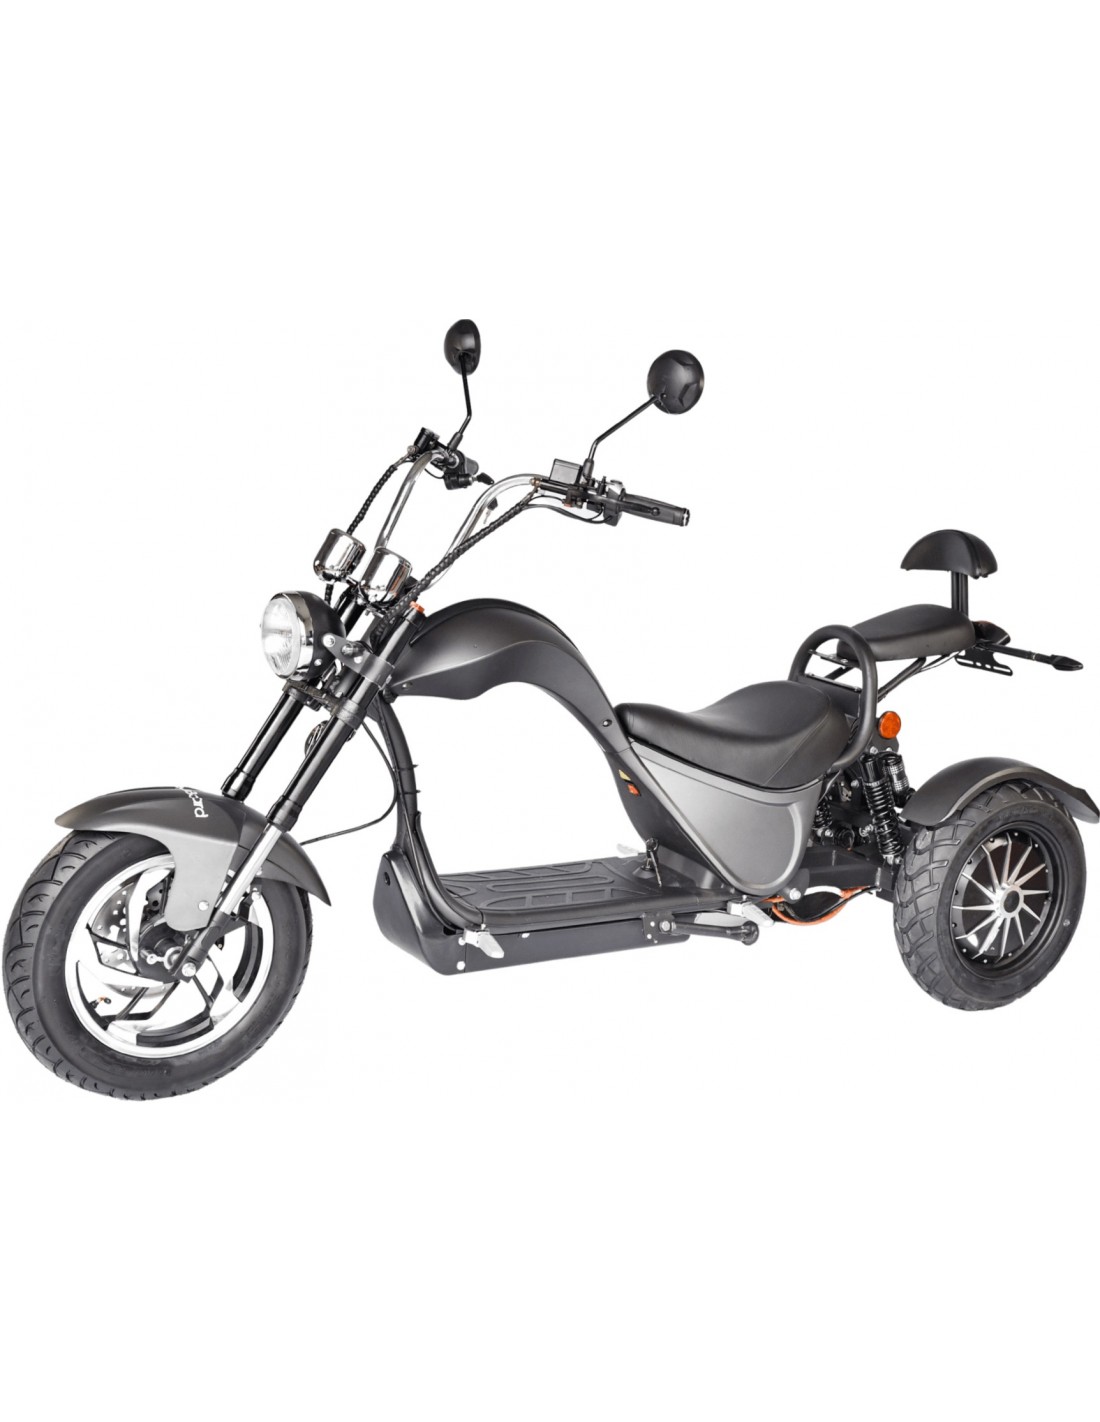 Comment choisir son deux-roues (scooter / moto) électrique ? - Les